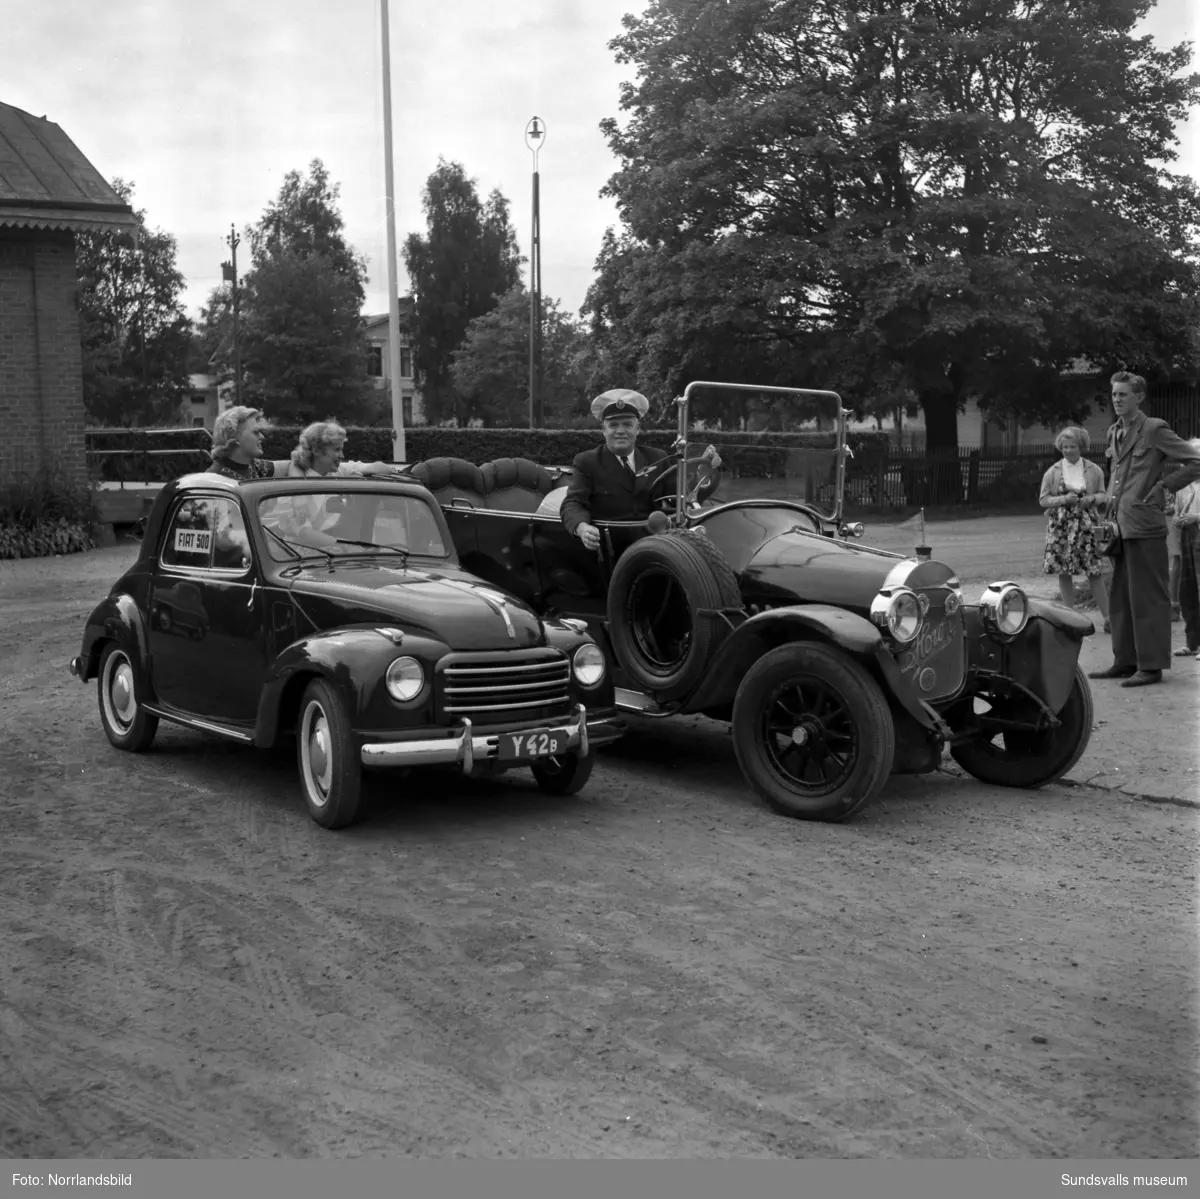 Gamla veteranbilar på planen invid Västra station, Åkersvik. Bland annat Fritiof Larsson med sin Horch invid en liten Fiat 500 med registreringsnummer Y42B, två unga kvinnor tittar upp genom bilens taklucka. På tredje bilden en Ford från 1908, i bakgrunden Kronohäktet.